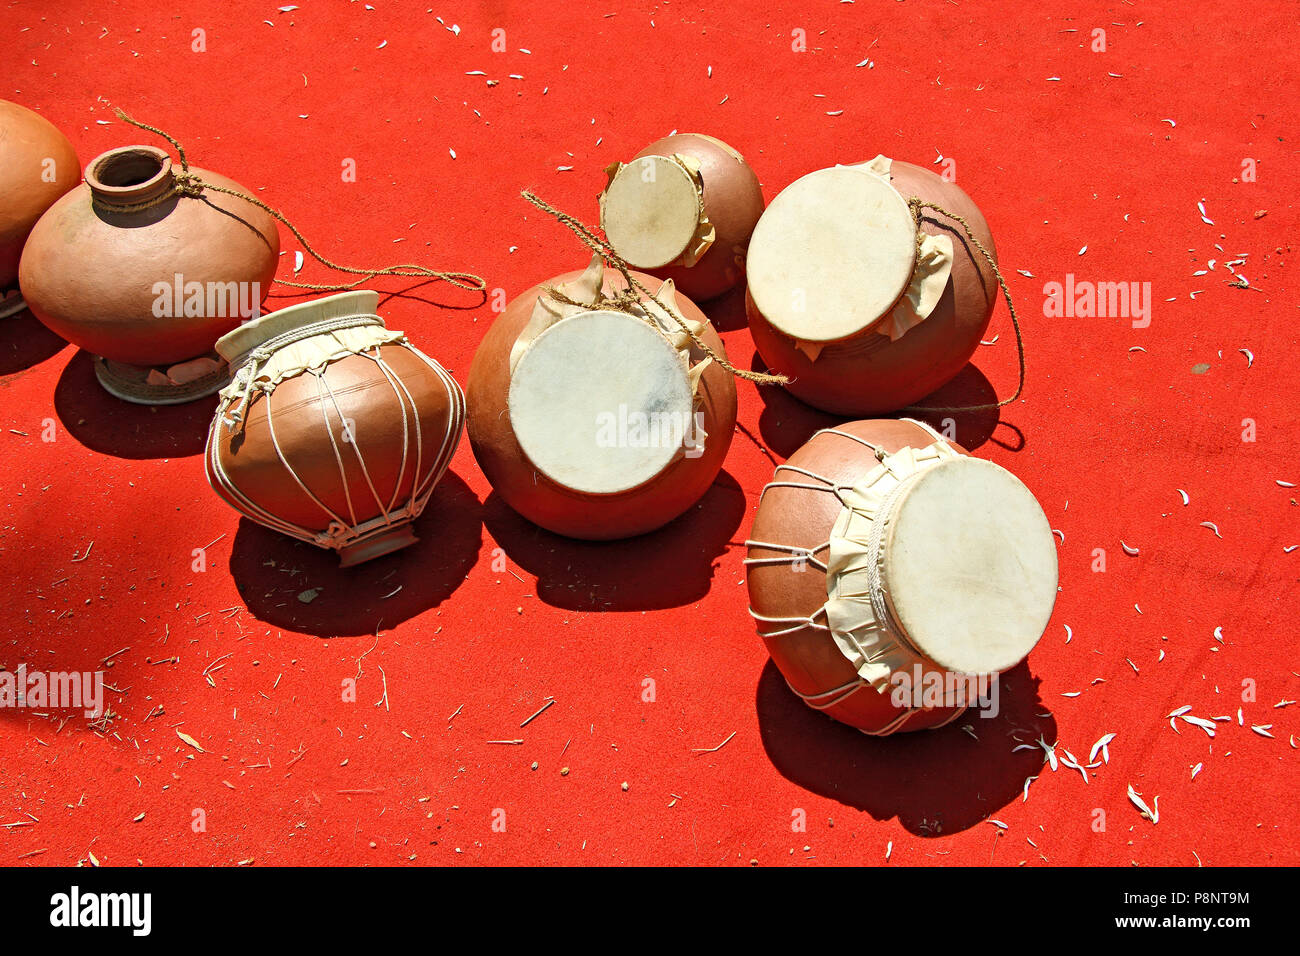 Ghumat oder ghumott, die traditionellen Percussion Musikinstrumente von Goa, Indien, aus Leder Membran und earthern Topf Stockfoto